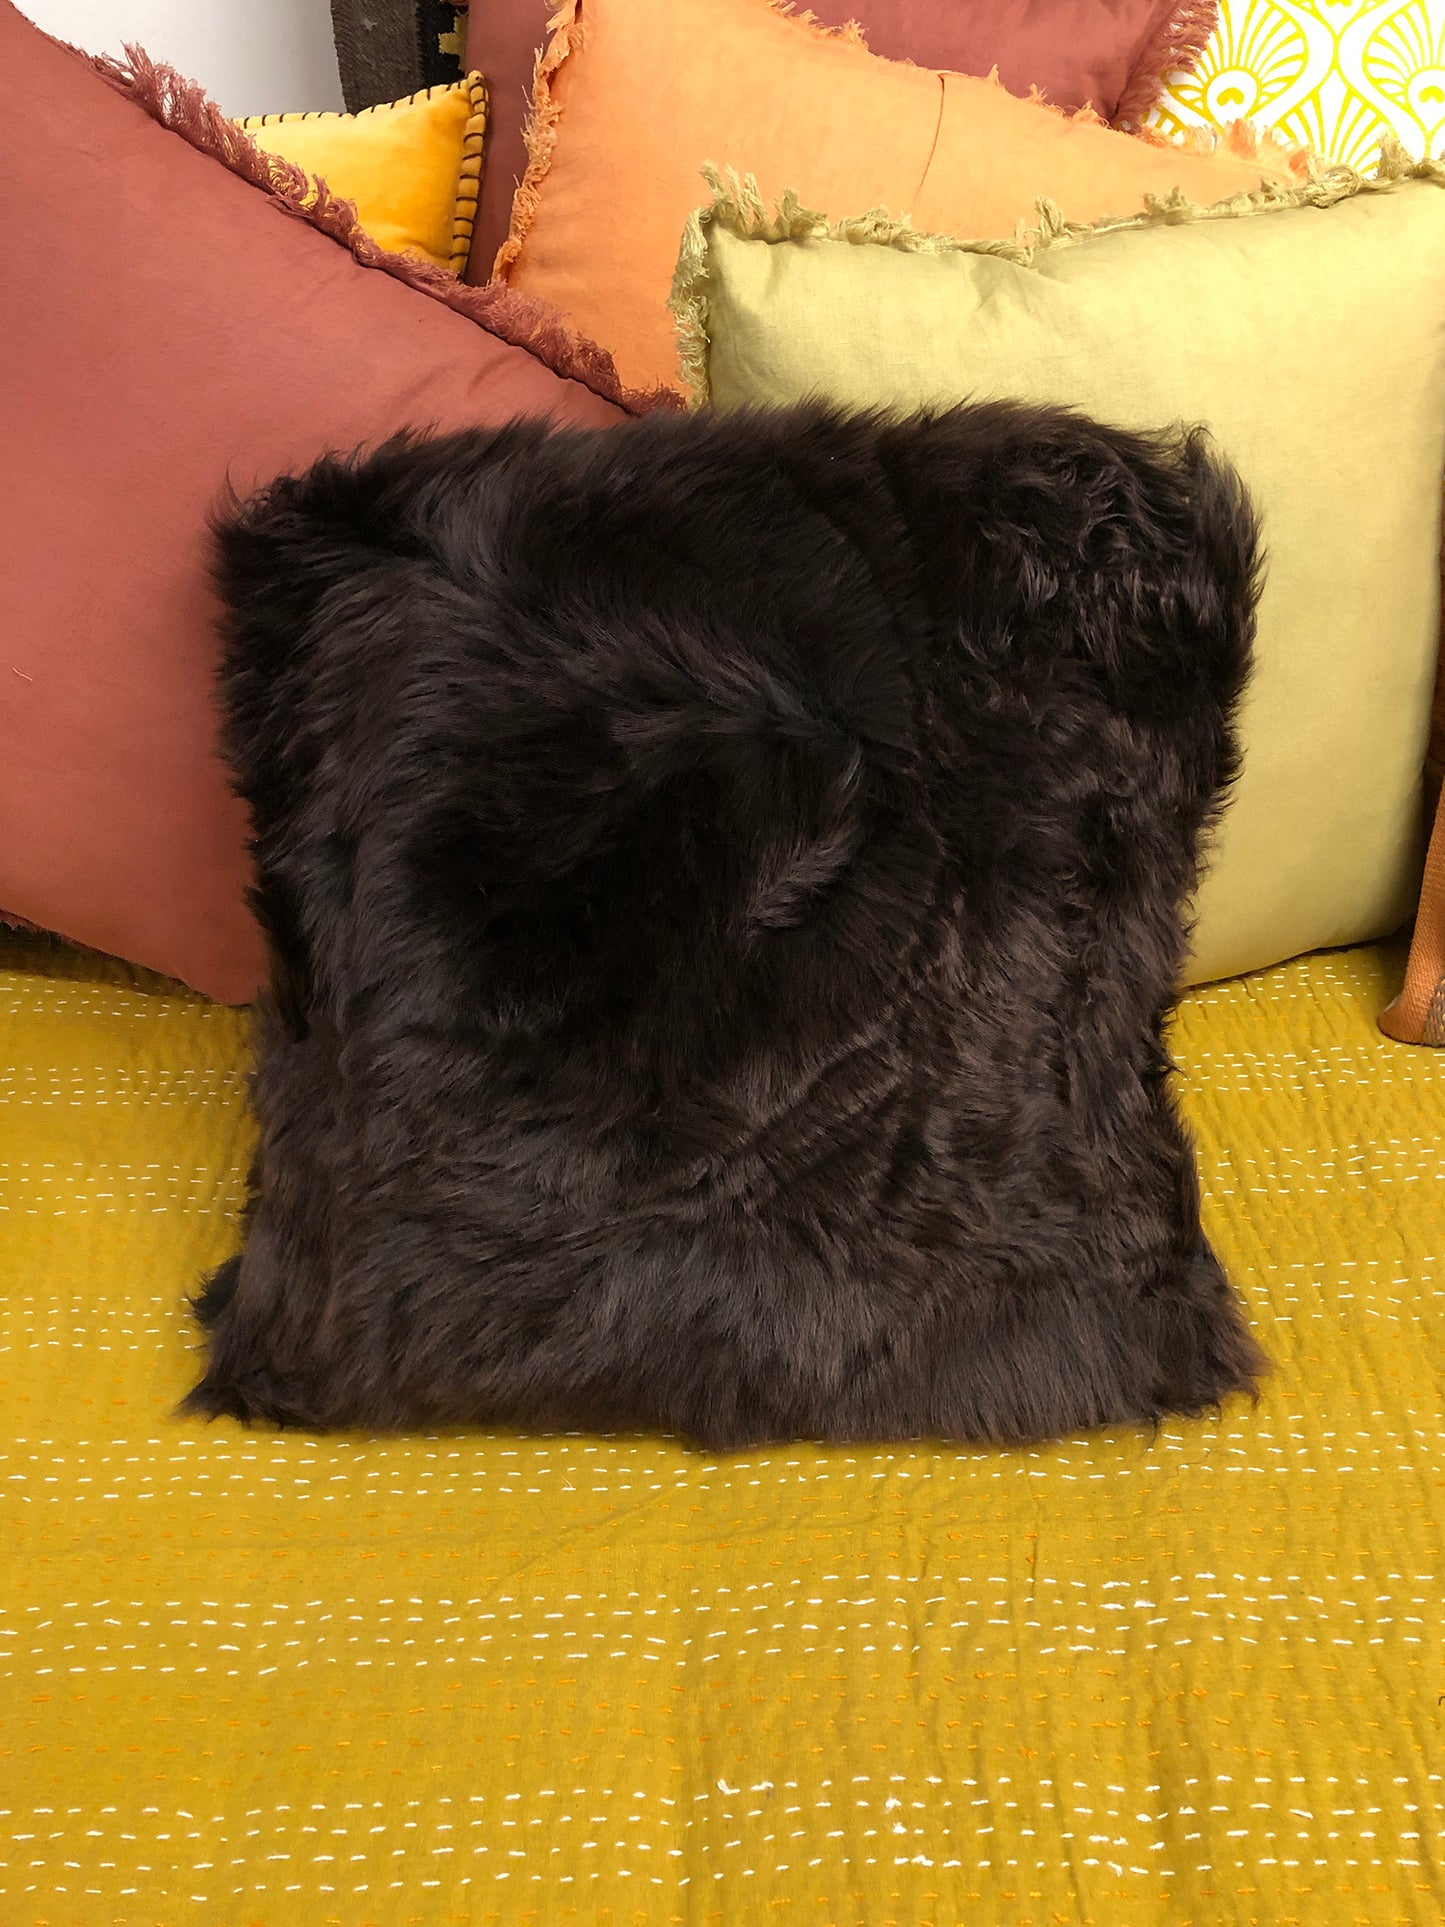 Sheep skin cushion